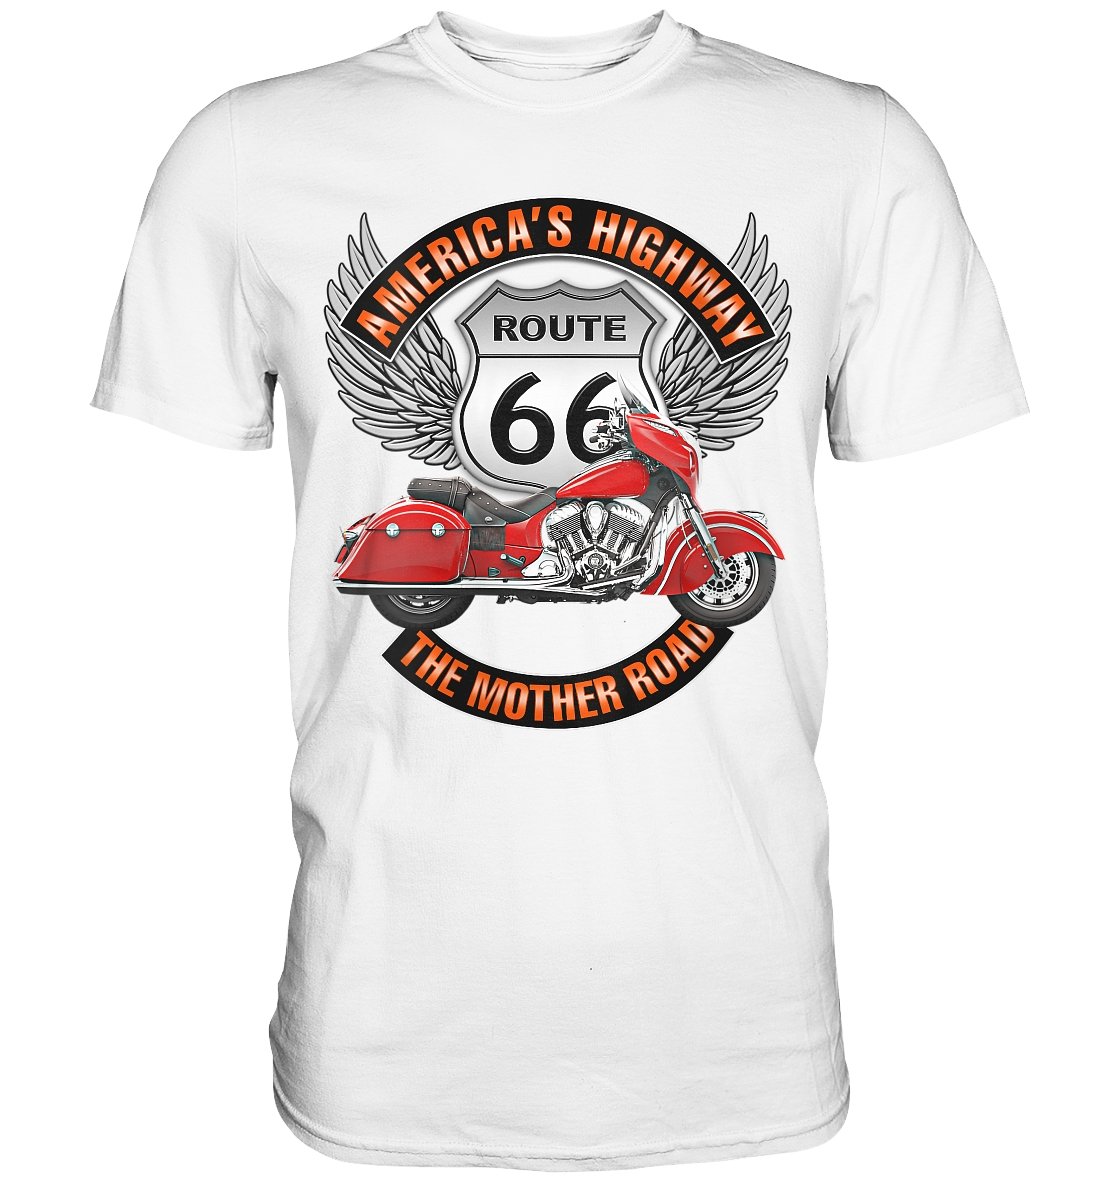 America‘s Highway Route 66 - Premium Shirt - BINYA